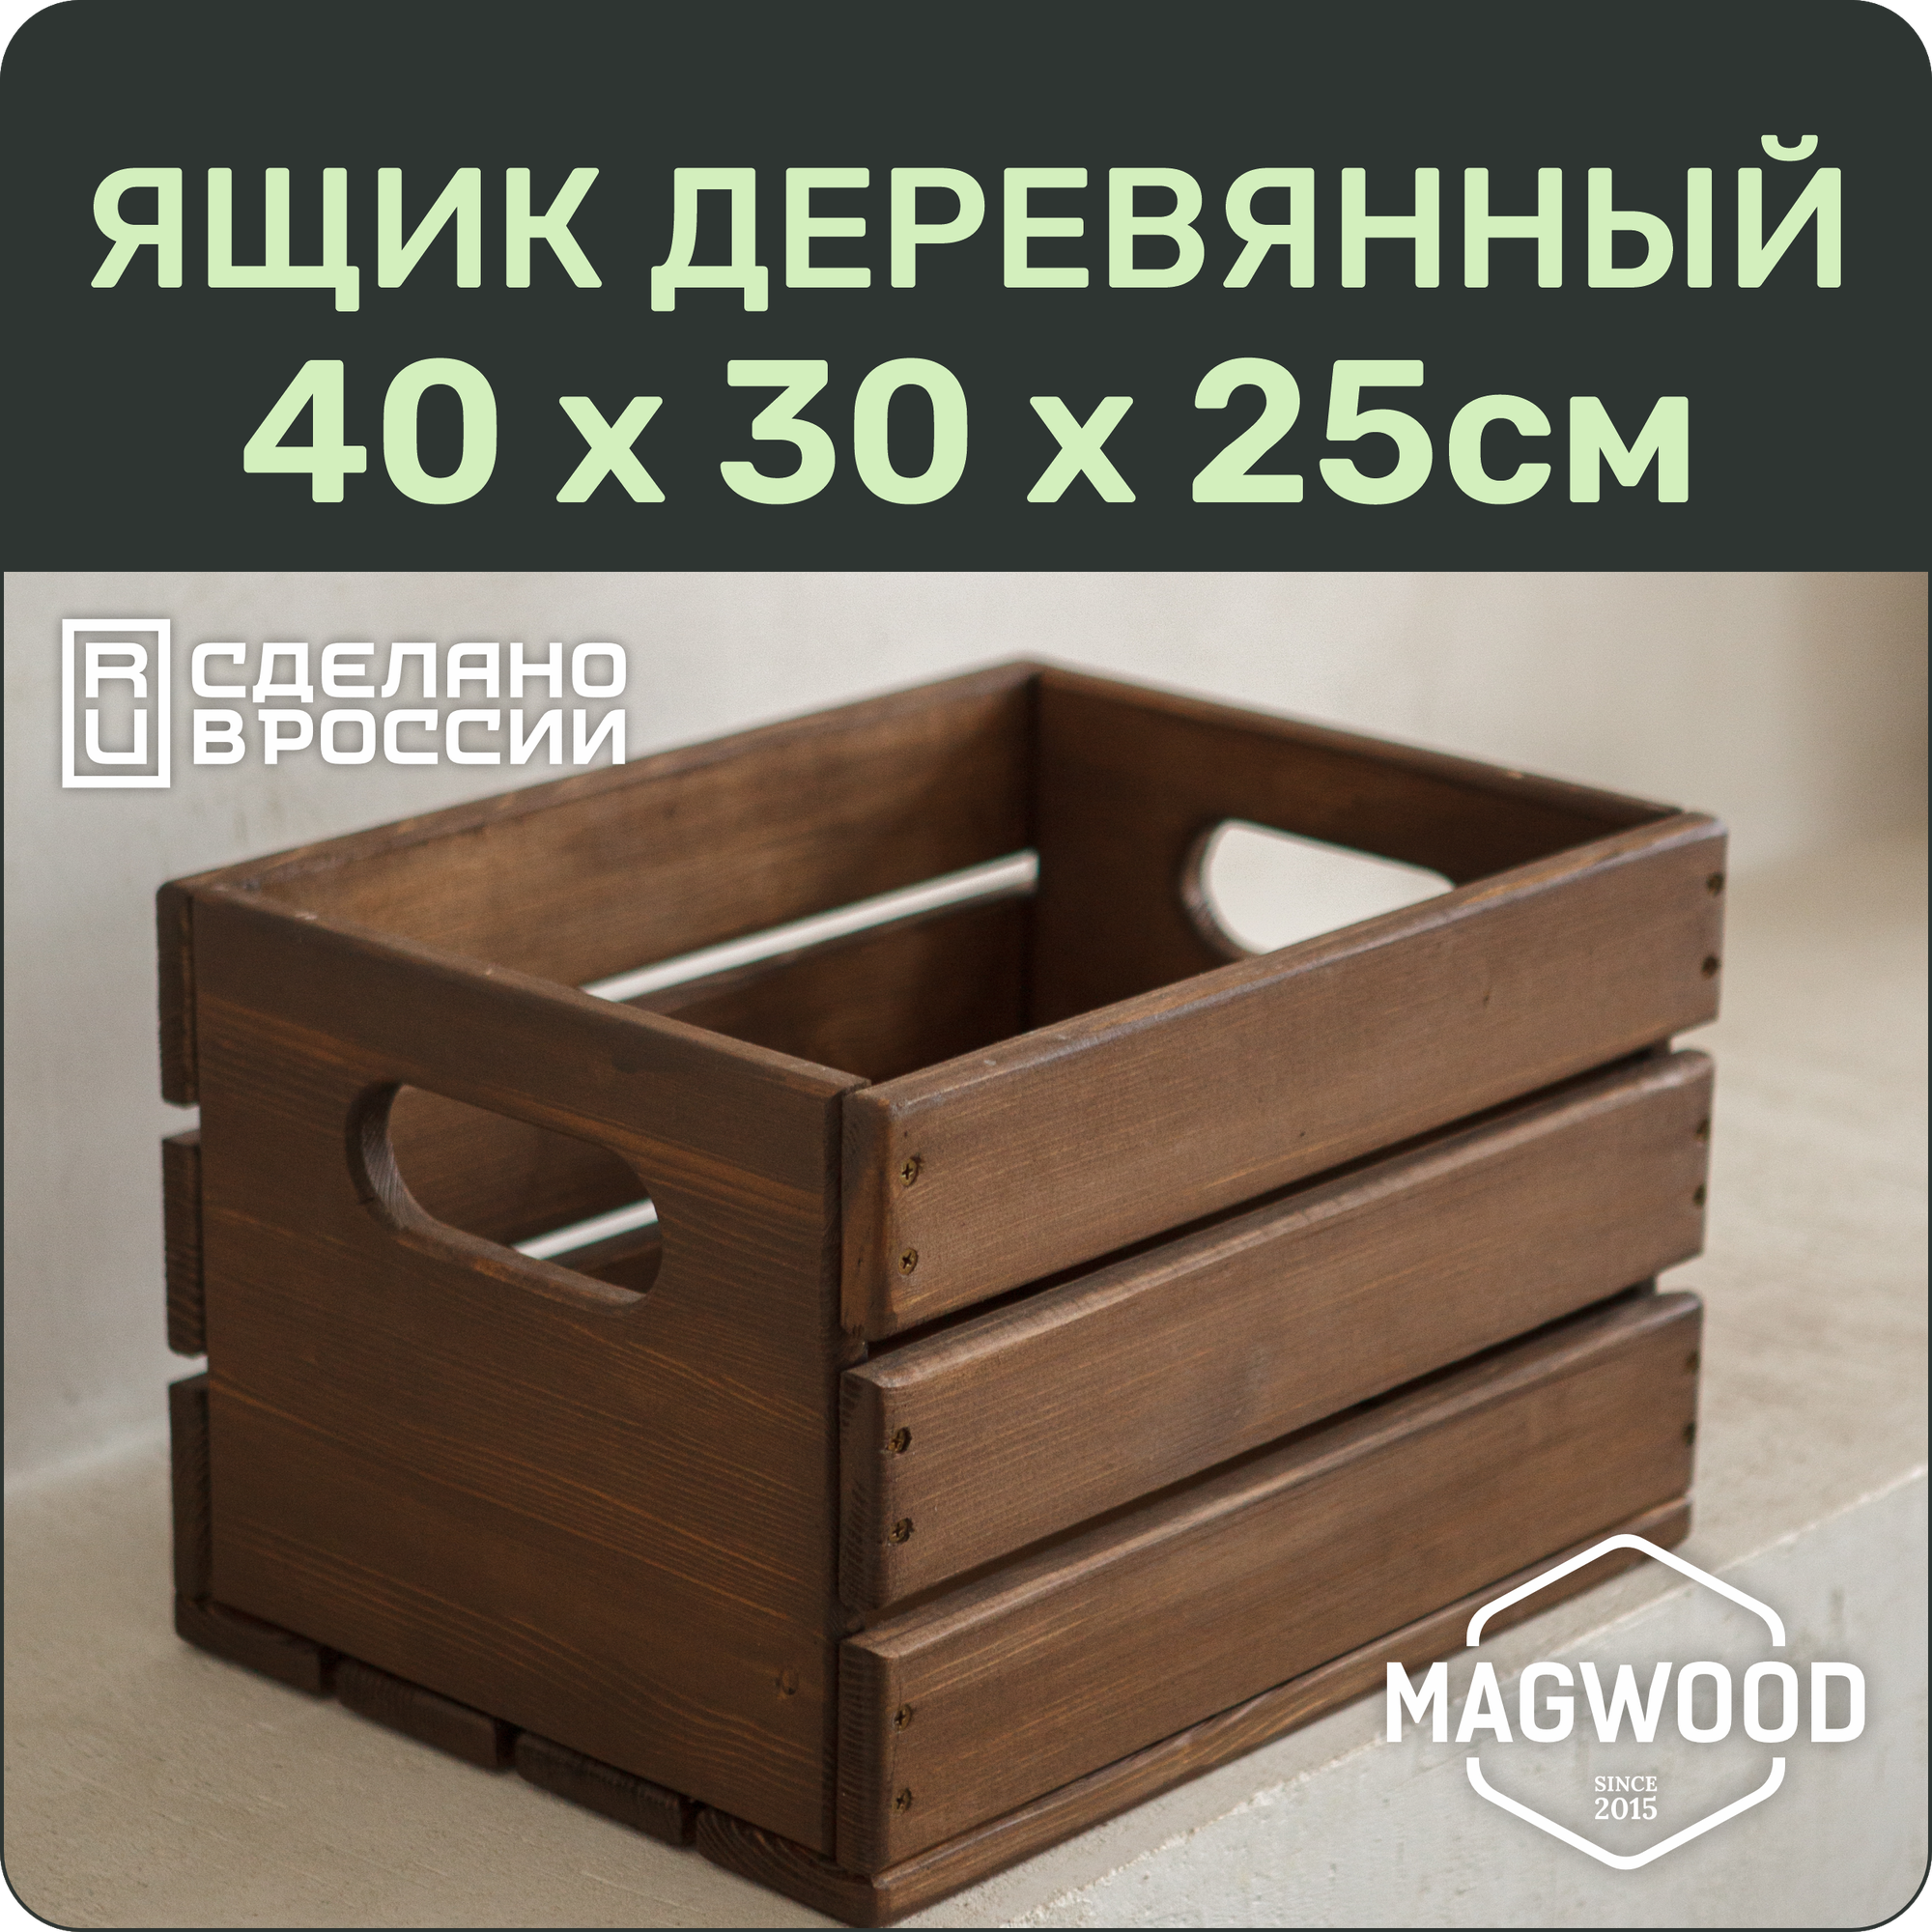 Ящик деревянный 40х30см для хранения вещей / для дома и дачи / для игрушек и цветов / цвет палисандр